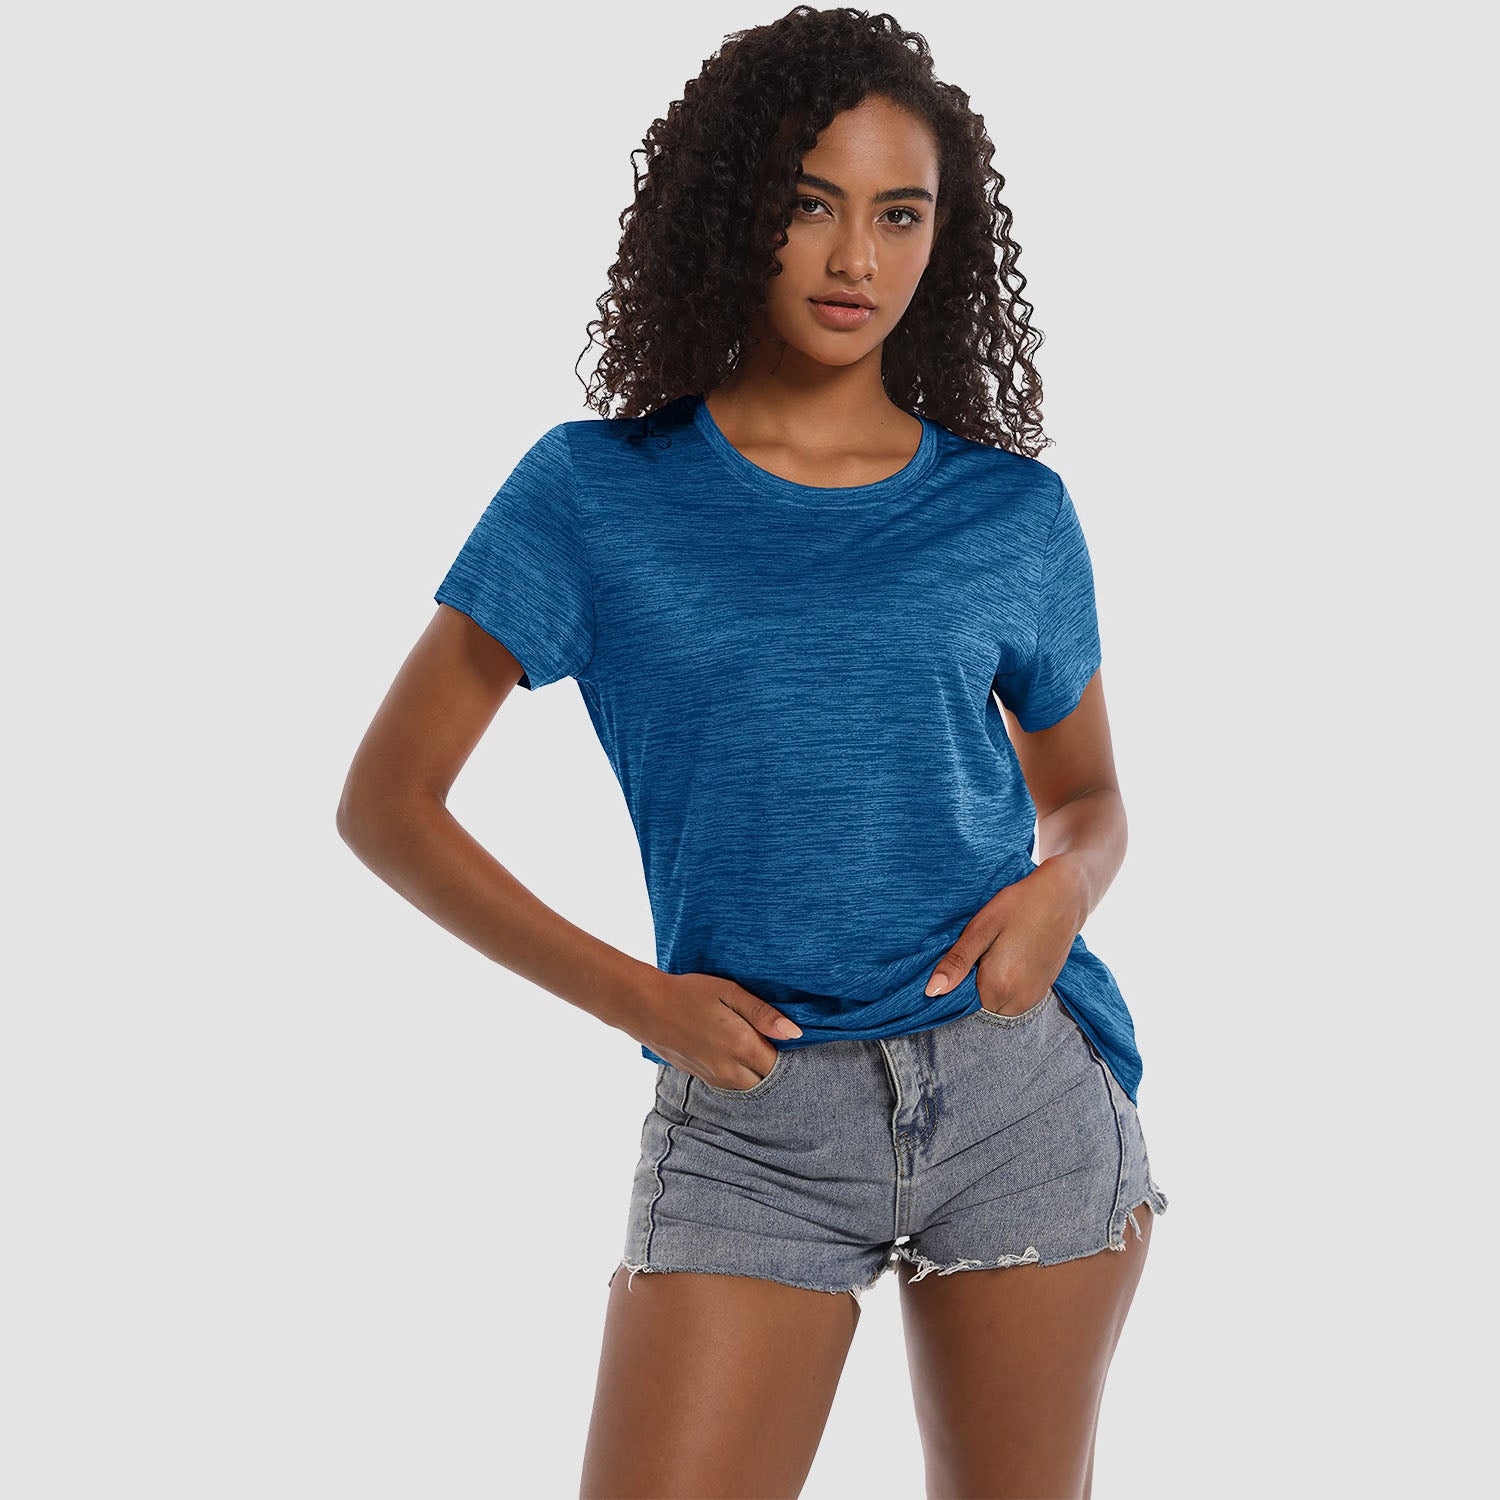 Women's Workout T-shirts Crewneck Short Sleeve Shirt Lightweight Soft Tops for Sports